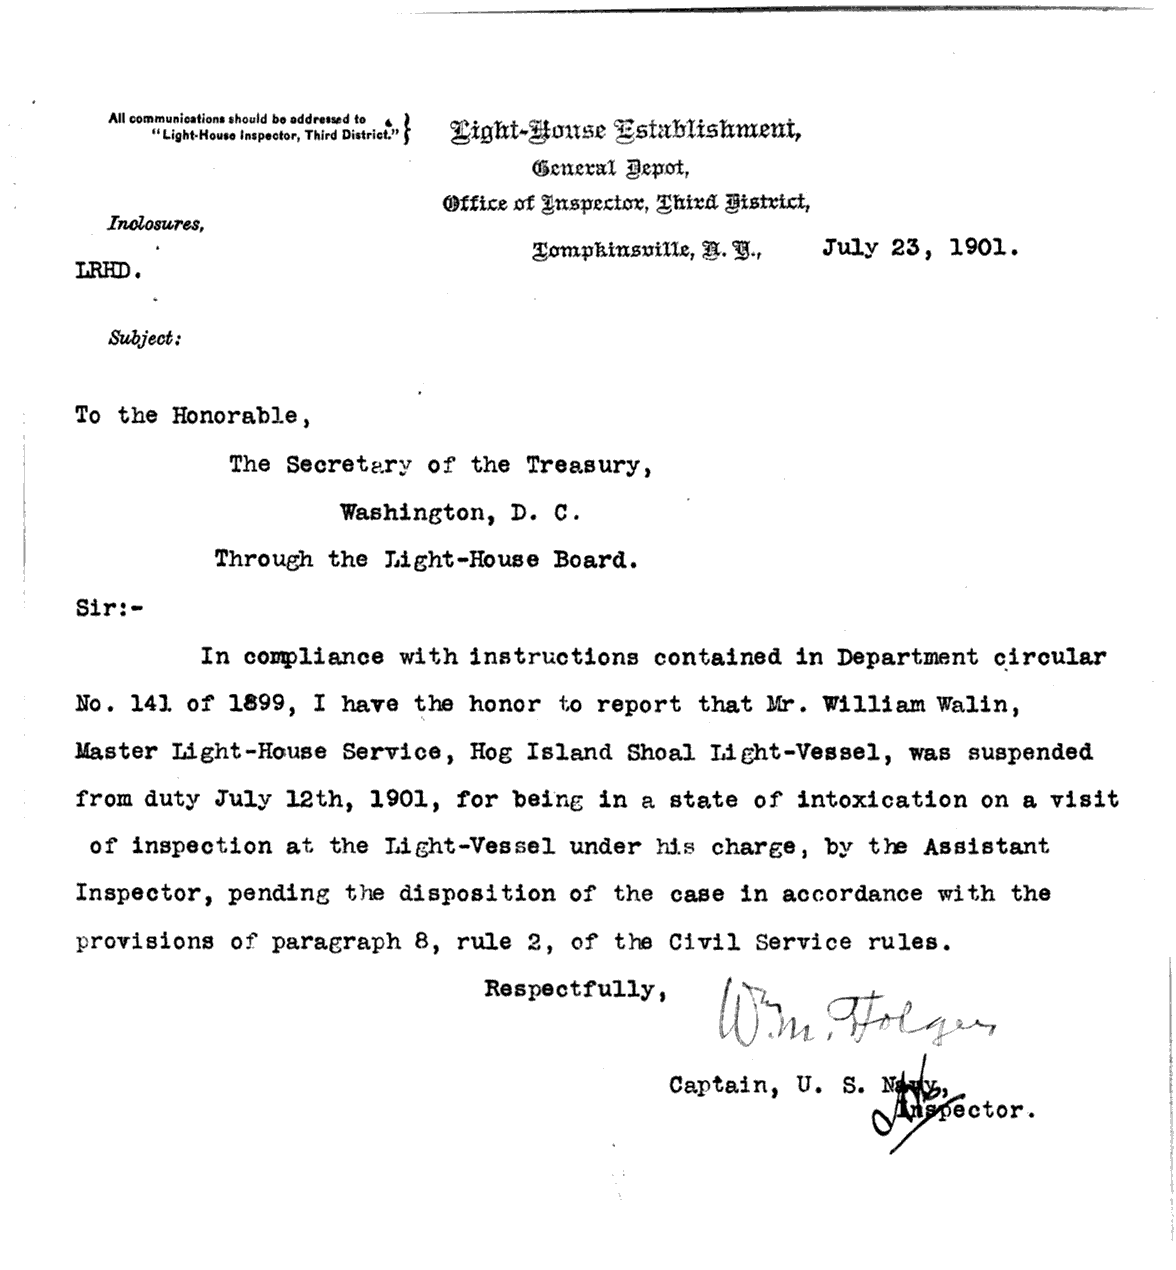 Hog Island Shosl Lightship LV-12 - Letter about Dismissal of Lightship's Keeper for Being Drunk on Duty